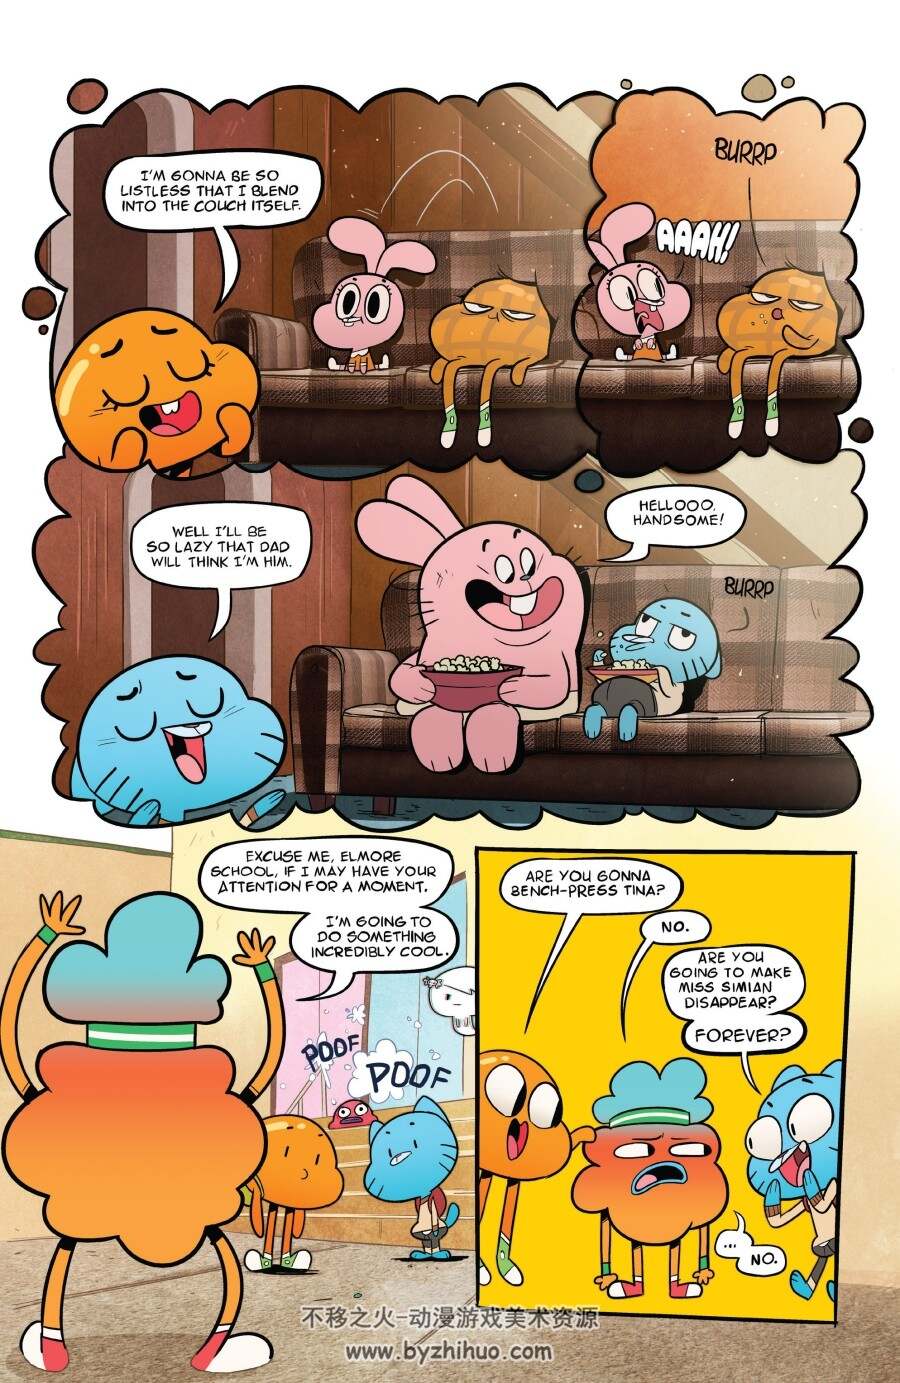 阿甘妙世界 The Amazing World of Gumball 官方漫画全收录 含中文版8卷 4.5GB